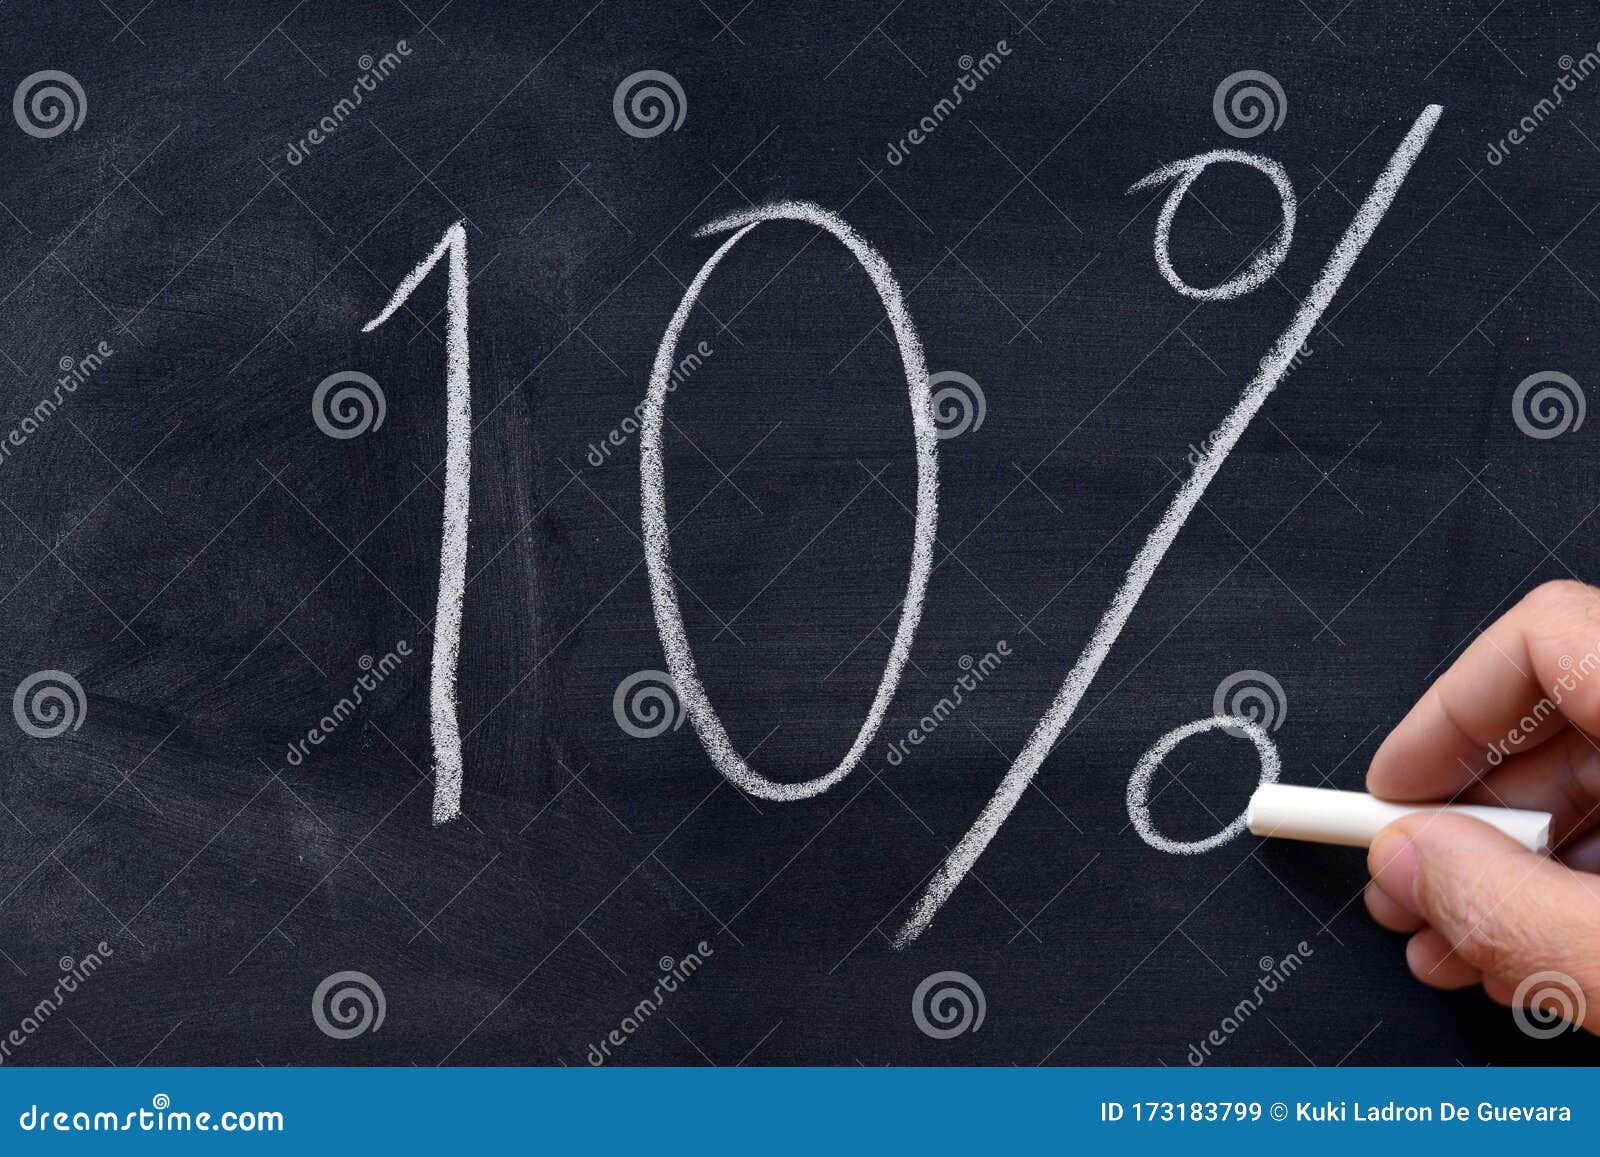 ten percent written on a blackboard